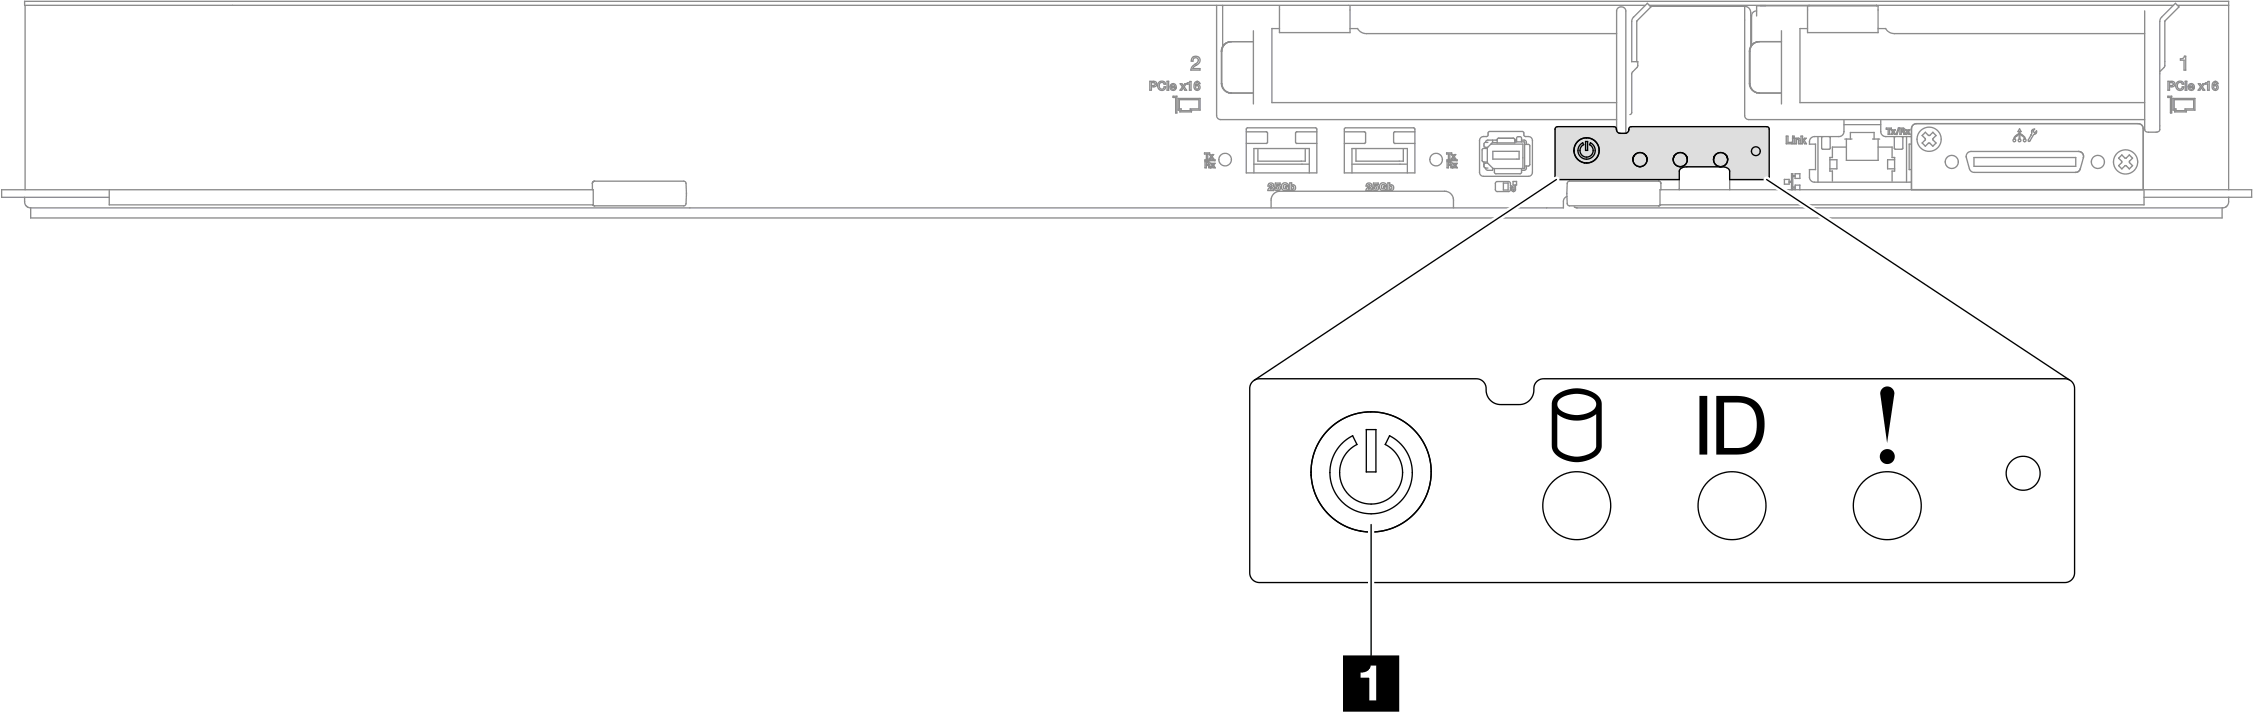 SD650-I V3 power button location